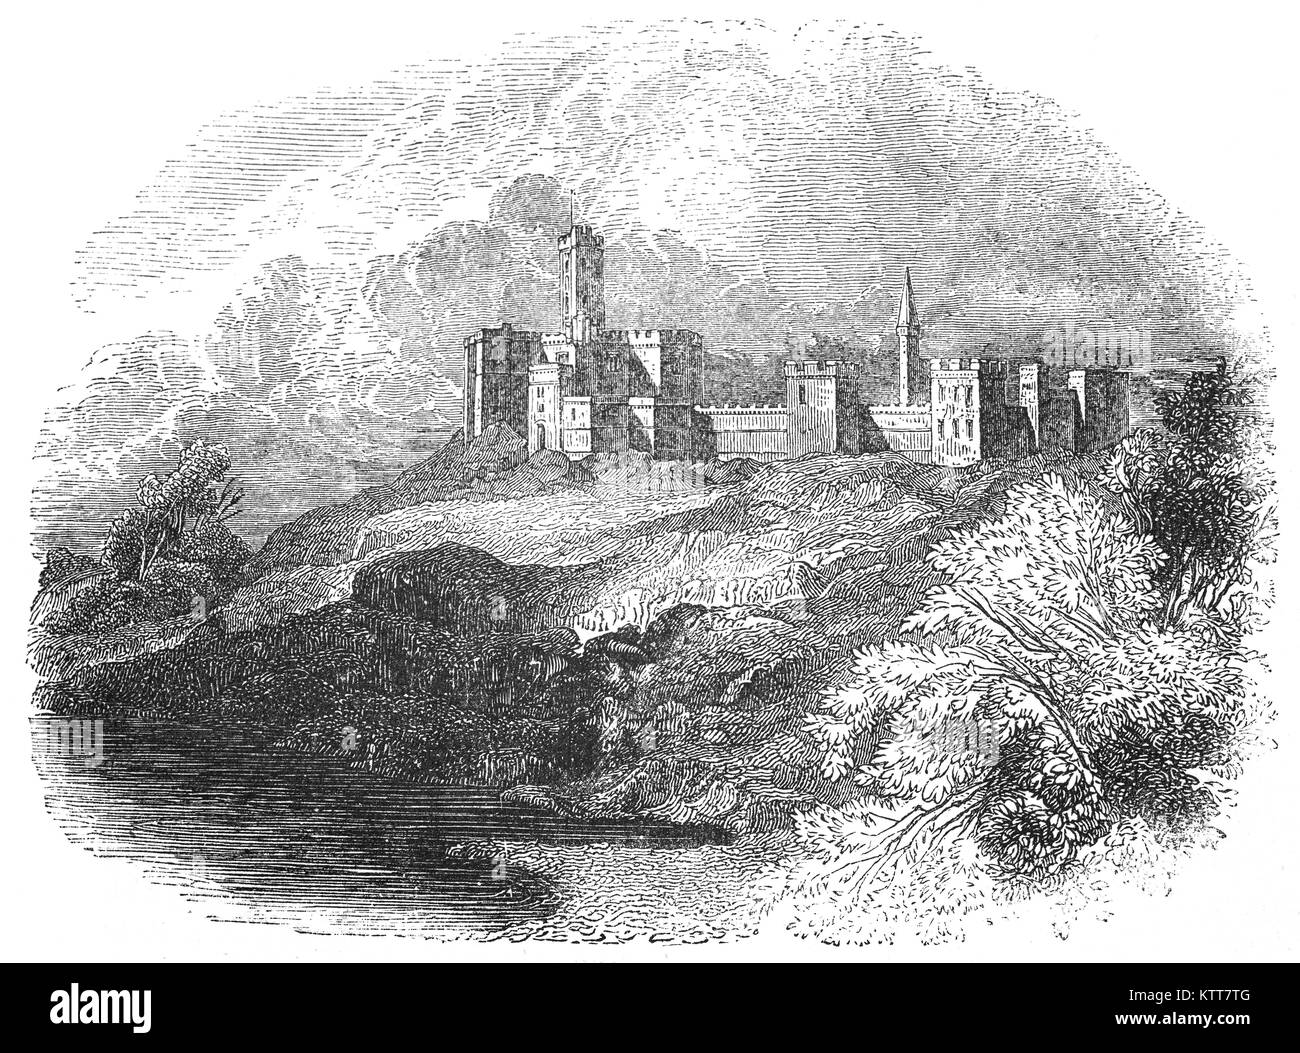 Mittelalterliche Warkworth Castle in der englischen Grafschaft Northumberland, kann durch König Heinrich II. von England gebaut wurden, als er die Kontrolle über den nördlichen Grafschaften Englands. Mit dem Ausbruch der Anglo-Scottish Kriege, eine Reihe von militärischen Kampagnen zwischen dem Königreich Schottland und das Königreich von England im späten 13. und frühen 14. Jahrhundert, Edward II investiert in Burgen einschließlich Warkworth, wo er die Stärkung der Garnison in 1319 finanziert. Zweimal im Jahre 1327 die Schotten das Schloss ohne Erfolg belagert. Stockfoto